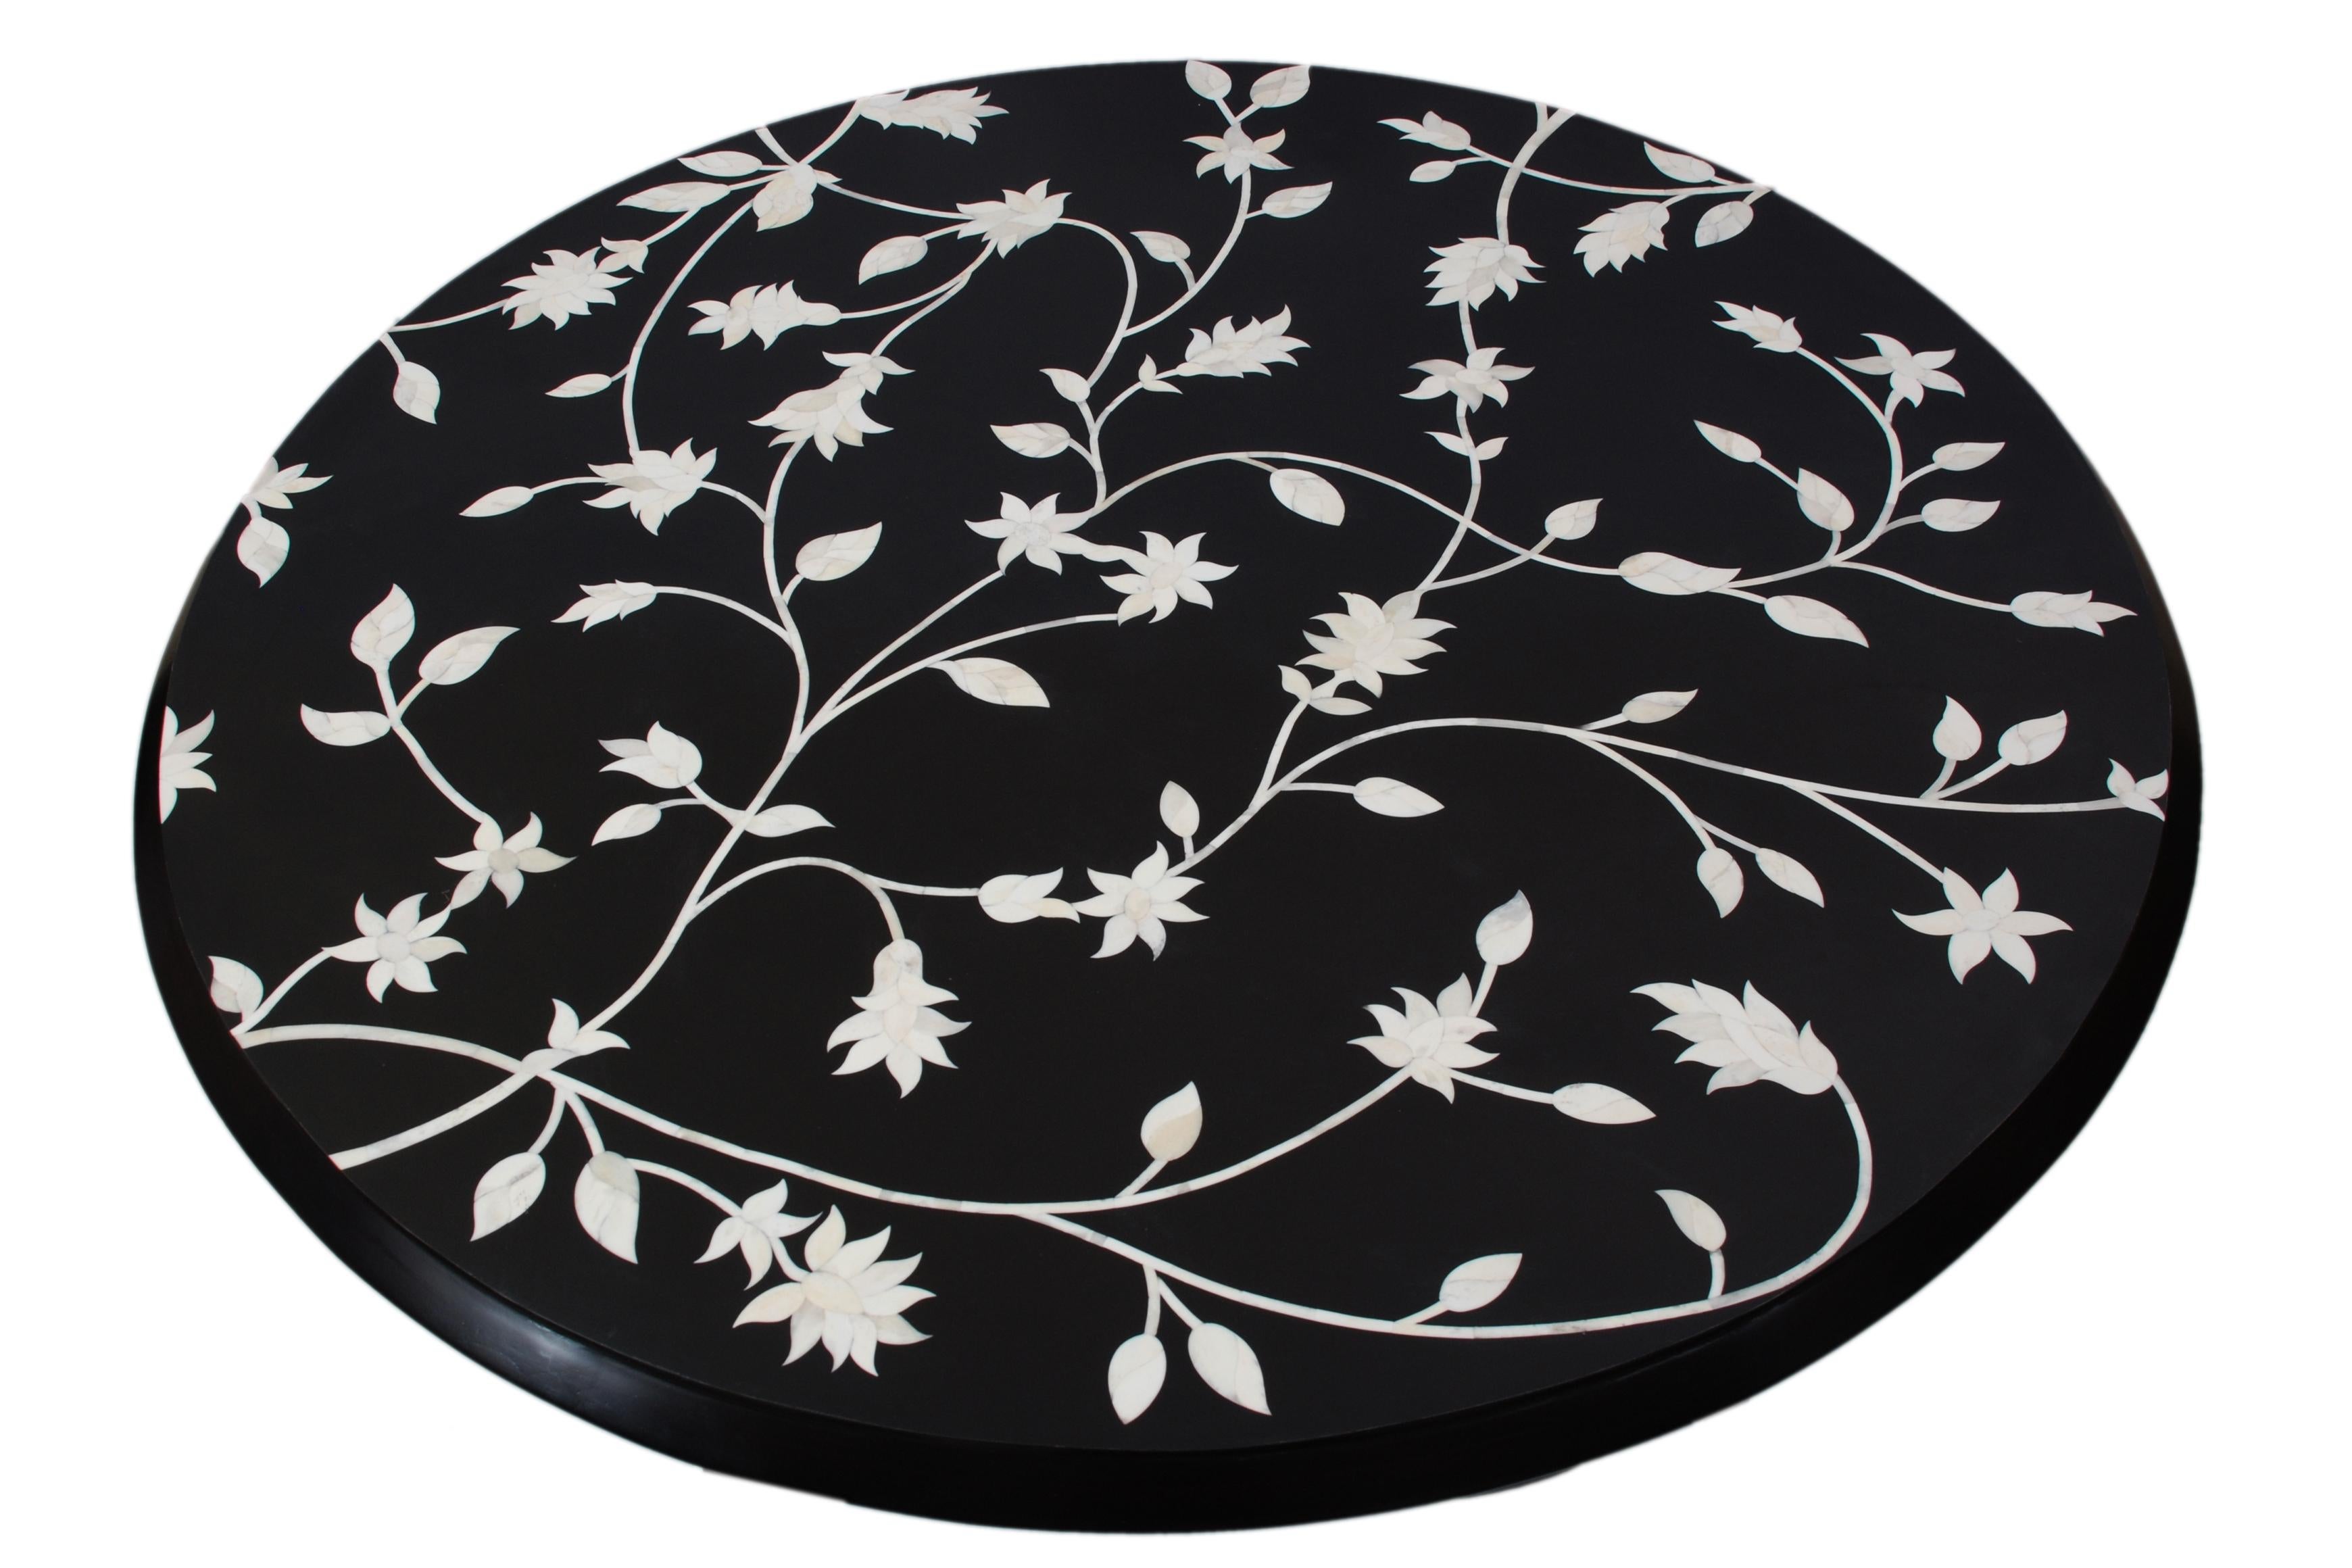 Célébration de la nature, la table Passion Lilies intègre des matériaux contrastés dans une pièce de collection exquise. L'os de chameau est coupé à la main et incrusté pour former un gracieux motif floral dans une mer de résine à base d'eau très